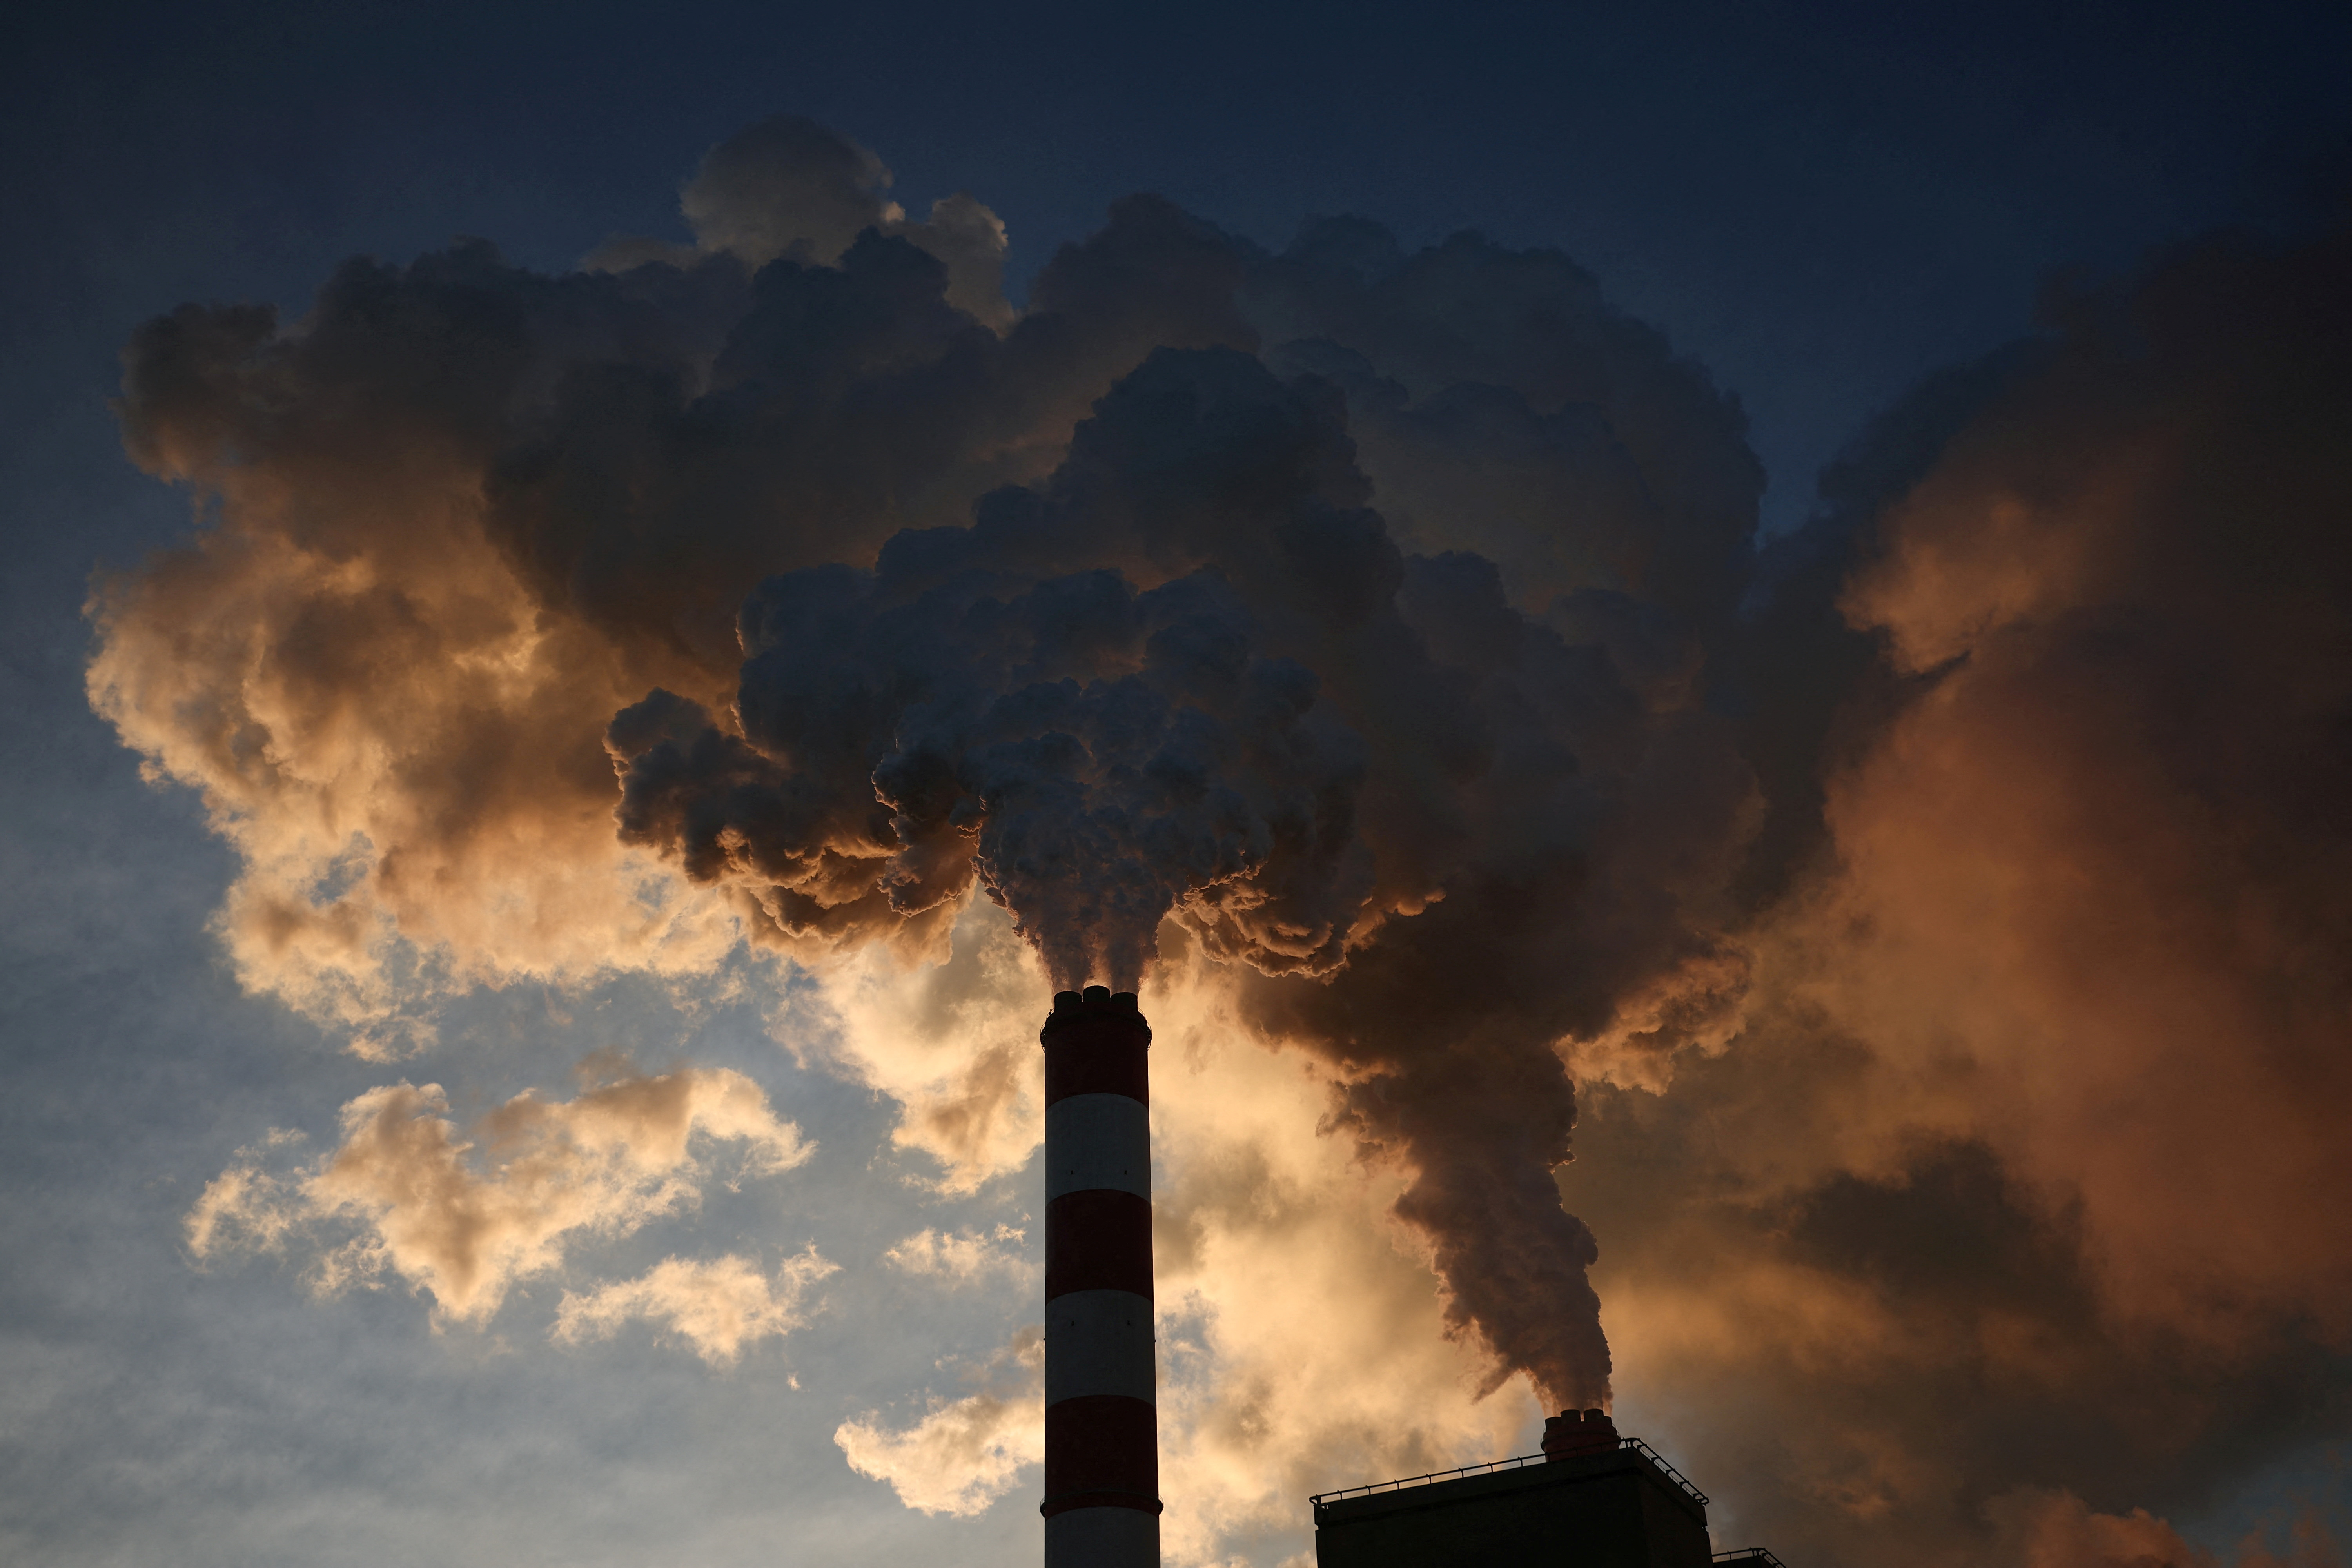 Die G7 stellen Deutschland und Japan ein Ultimatum in einer Vereinbarung zum Kohleausstieg bis 2035